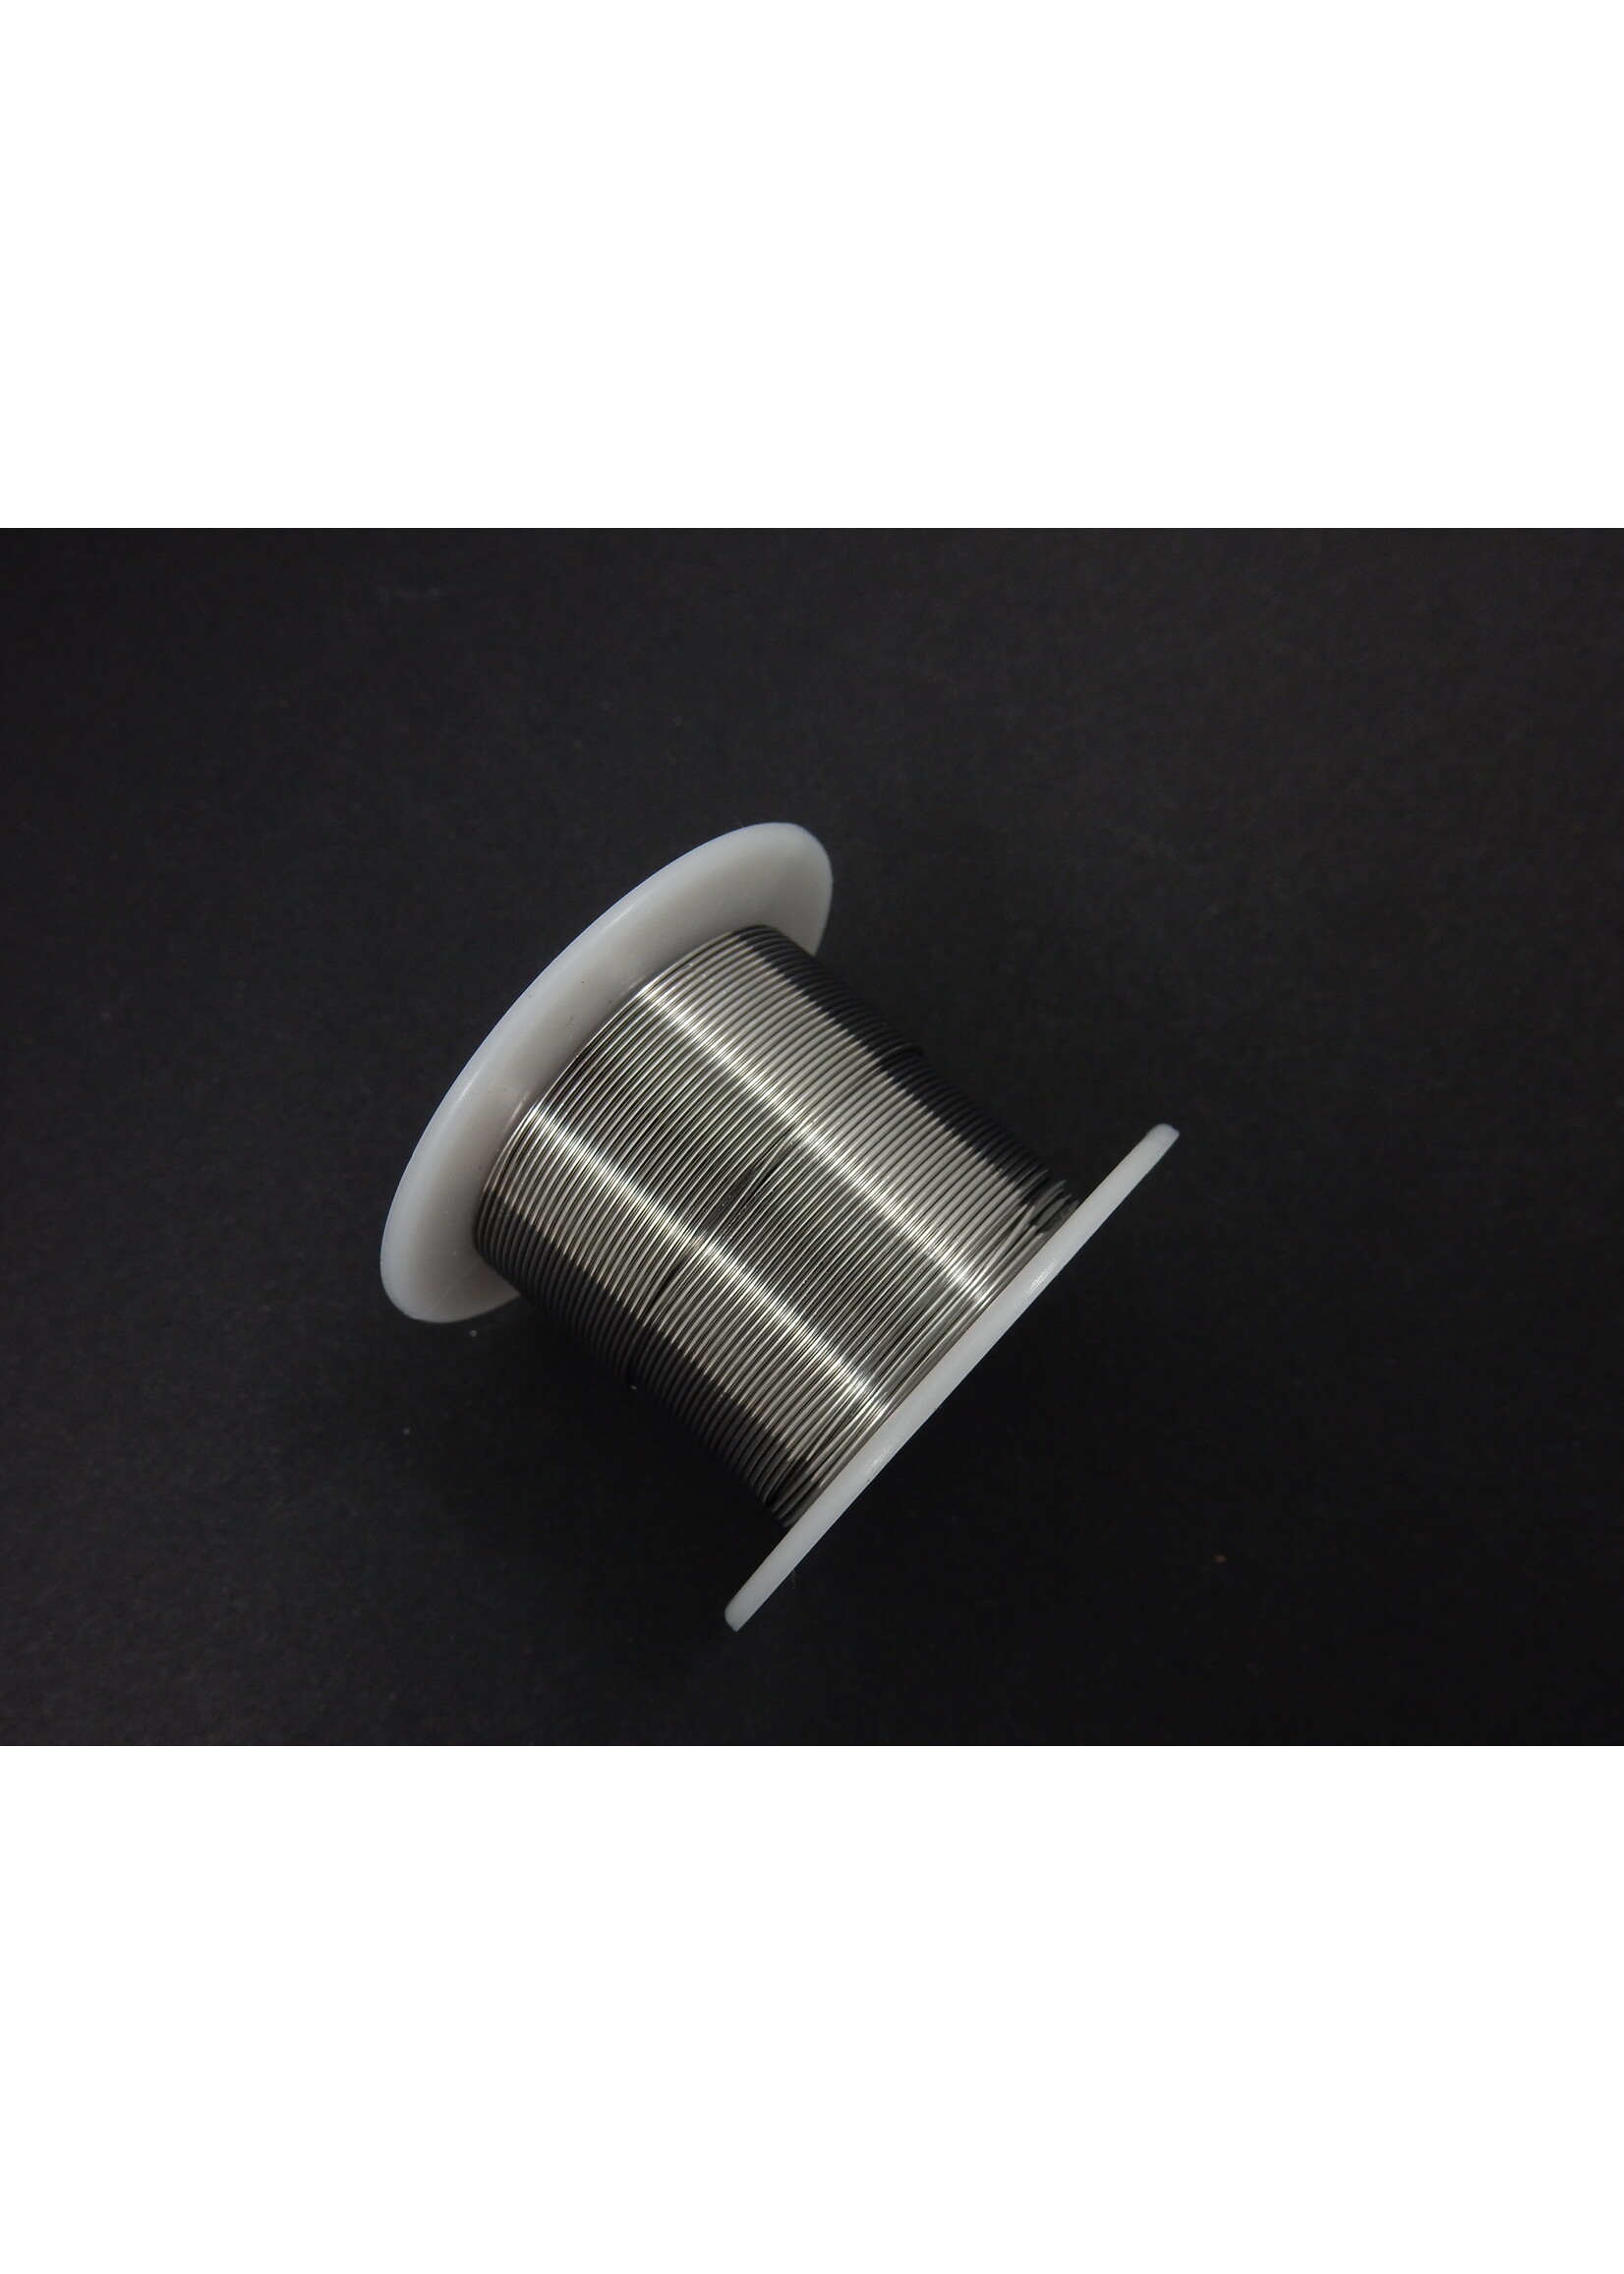 Solder tin wire - 0.6 mm, 100 gram